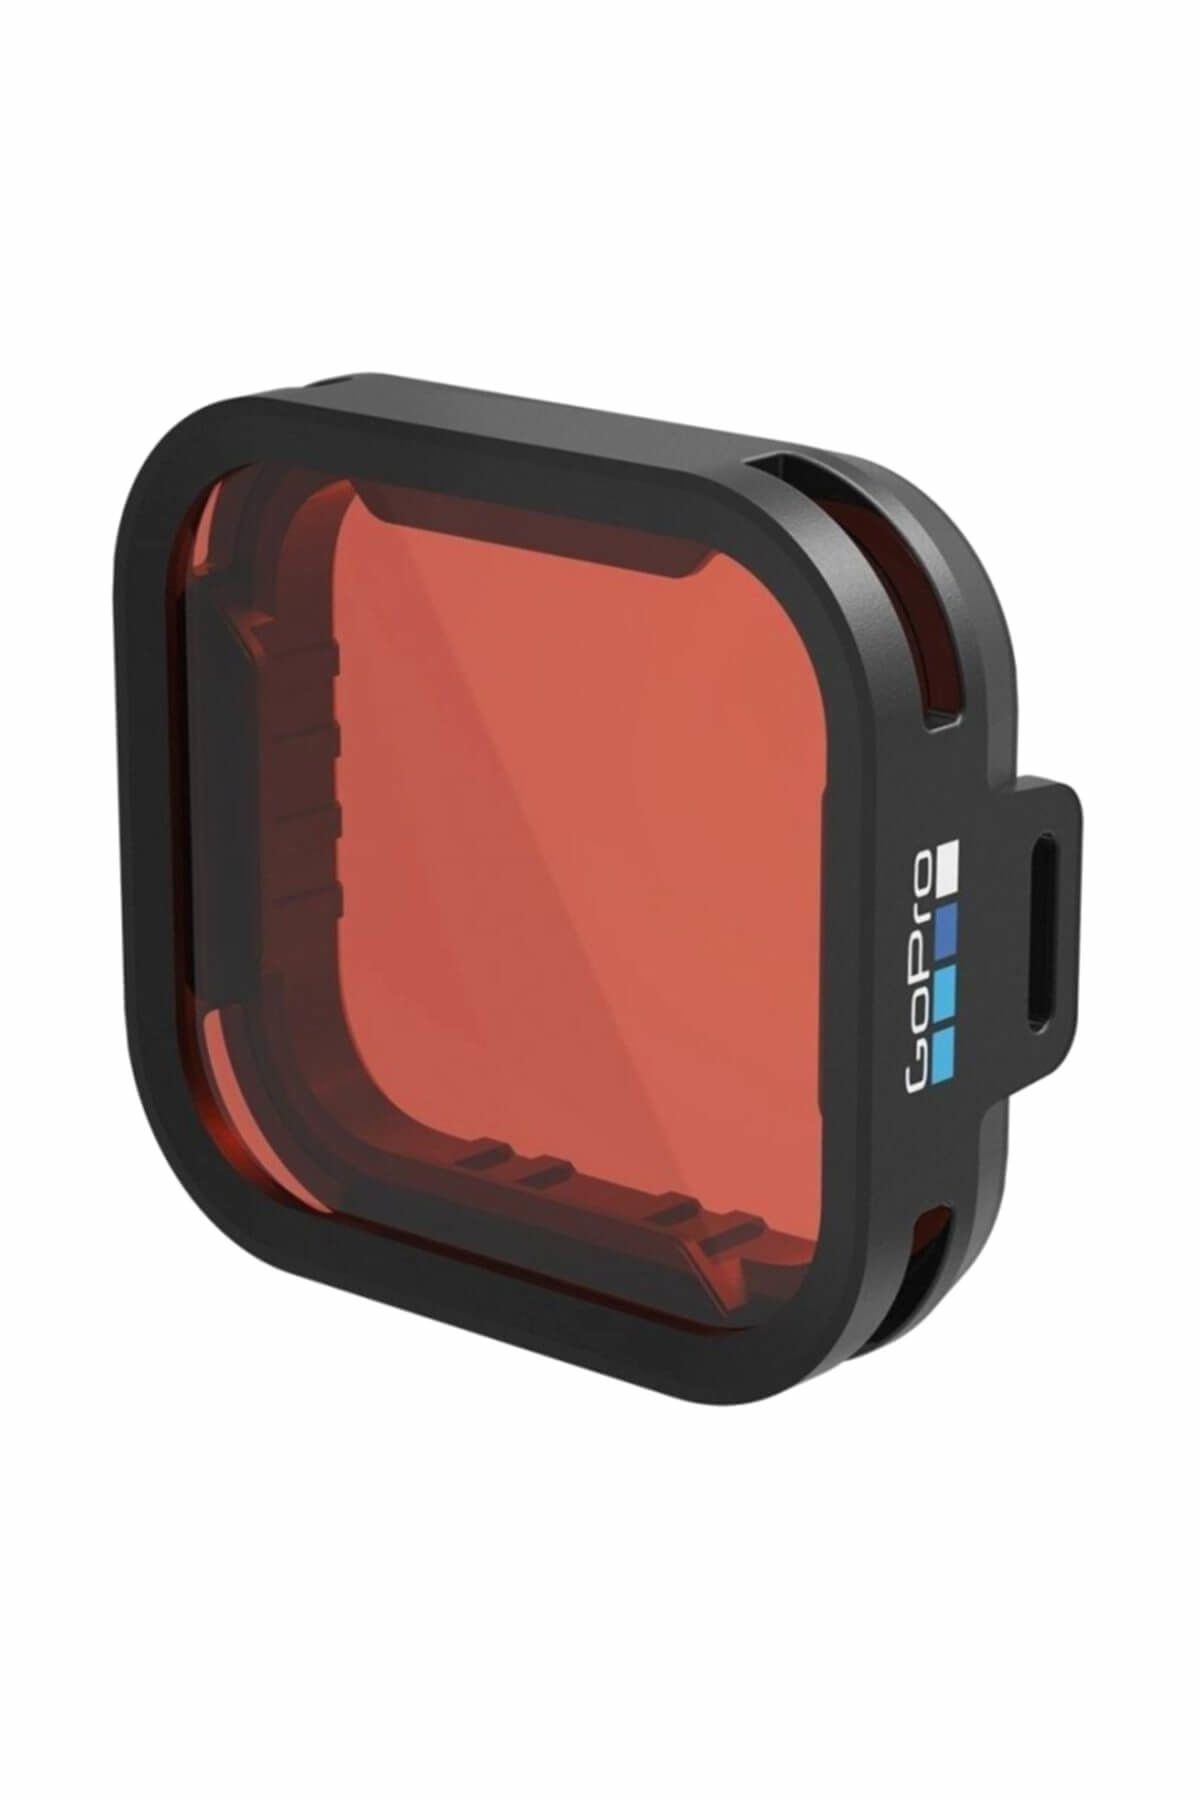 GoPro HERO 5 Black Mavi Sular için Şnorkel Dalış Filtresi